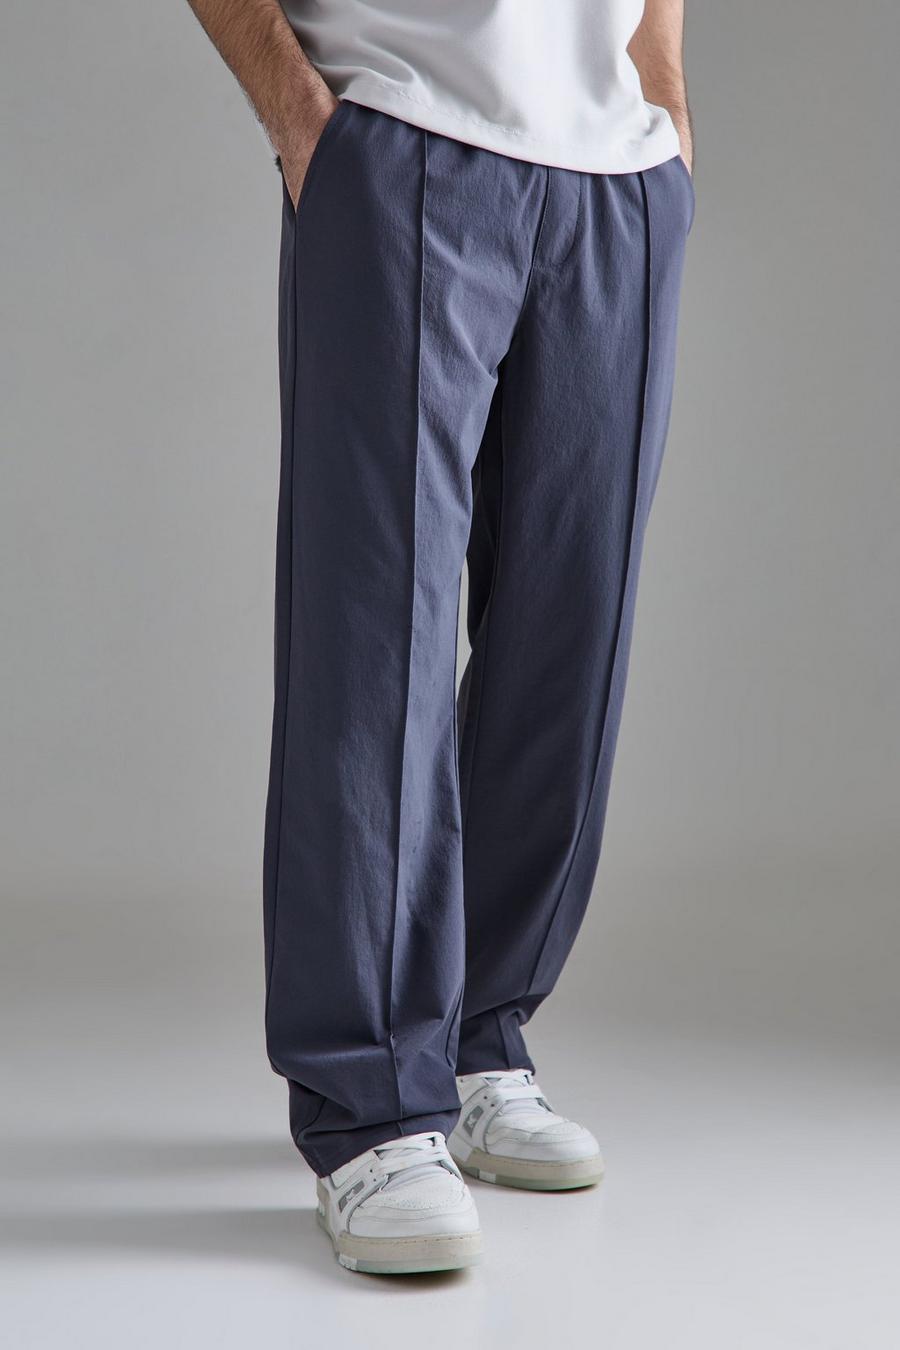 Pantaloni rilassati in Stretch tecnico leggero con nervature, Slate blue